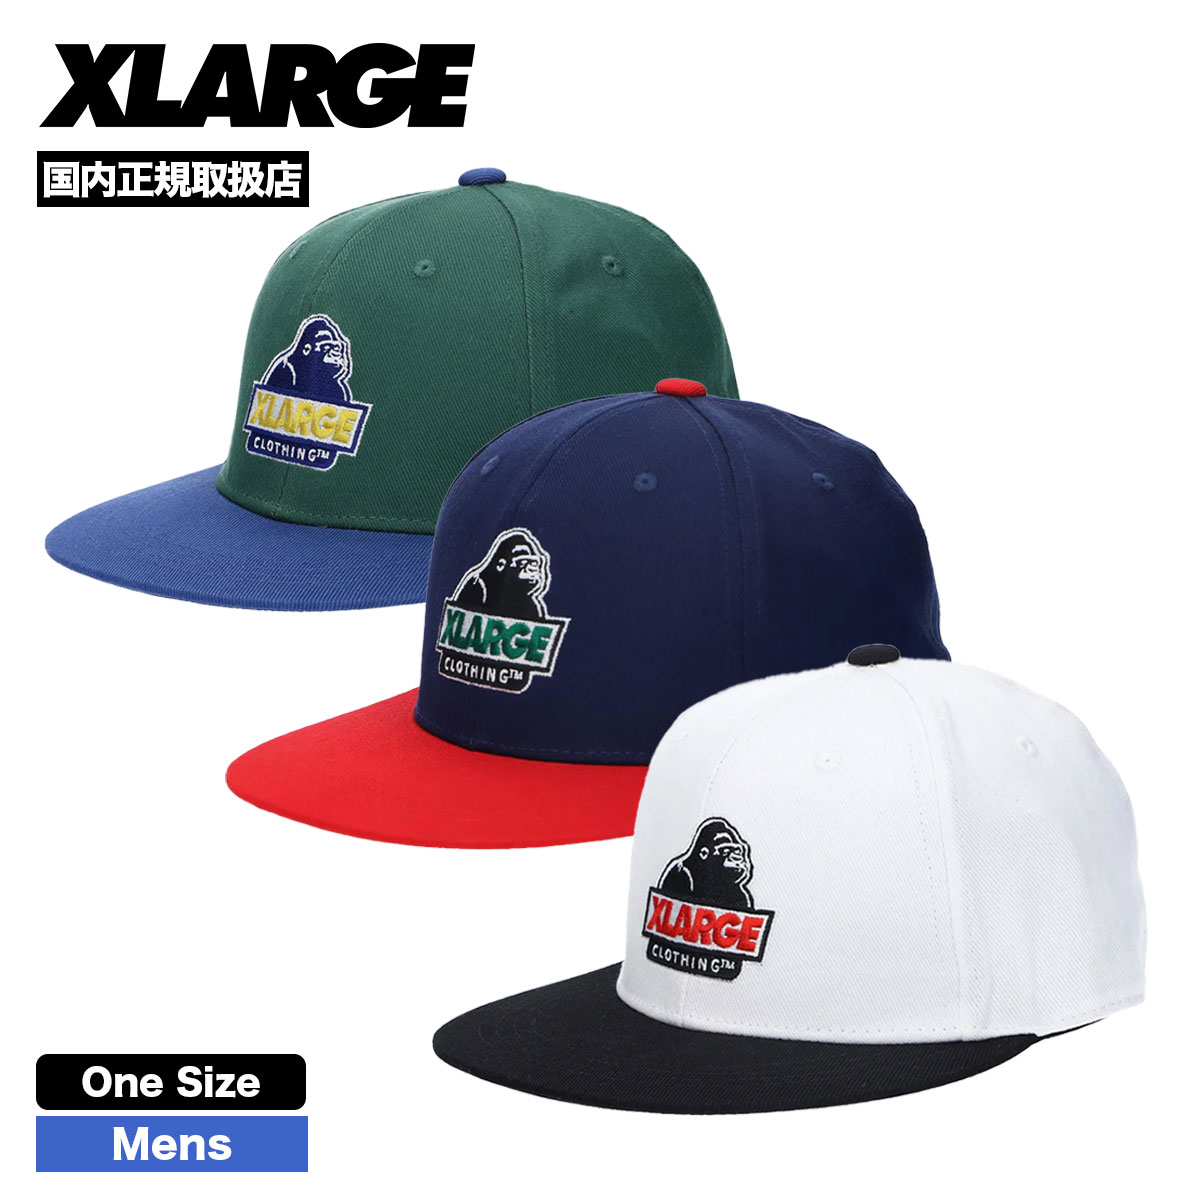 XLARGE cap